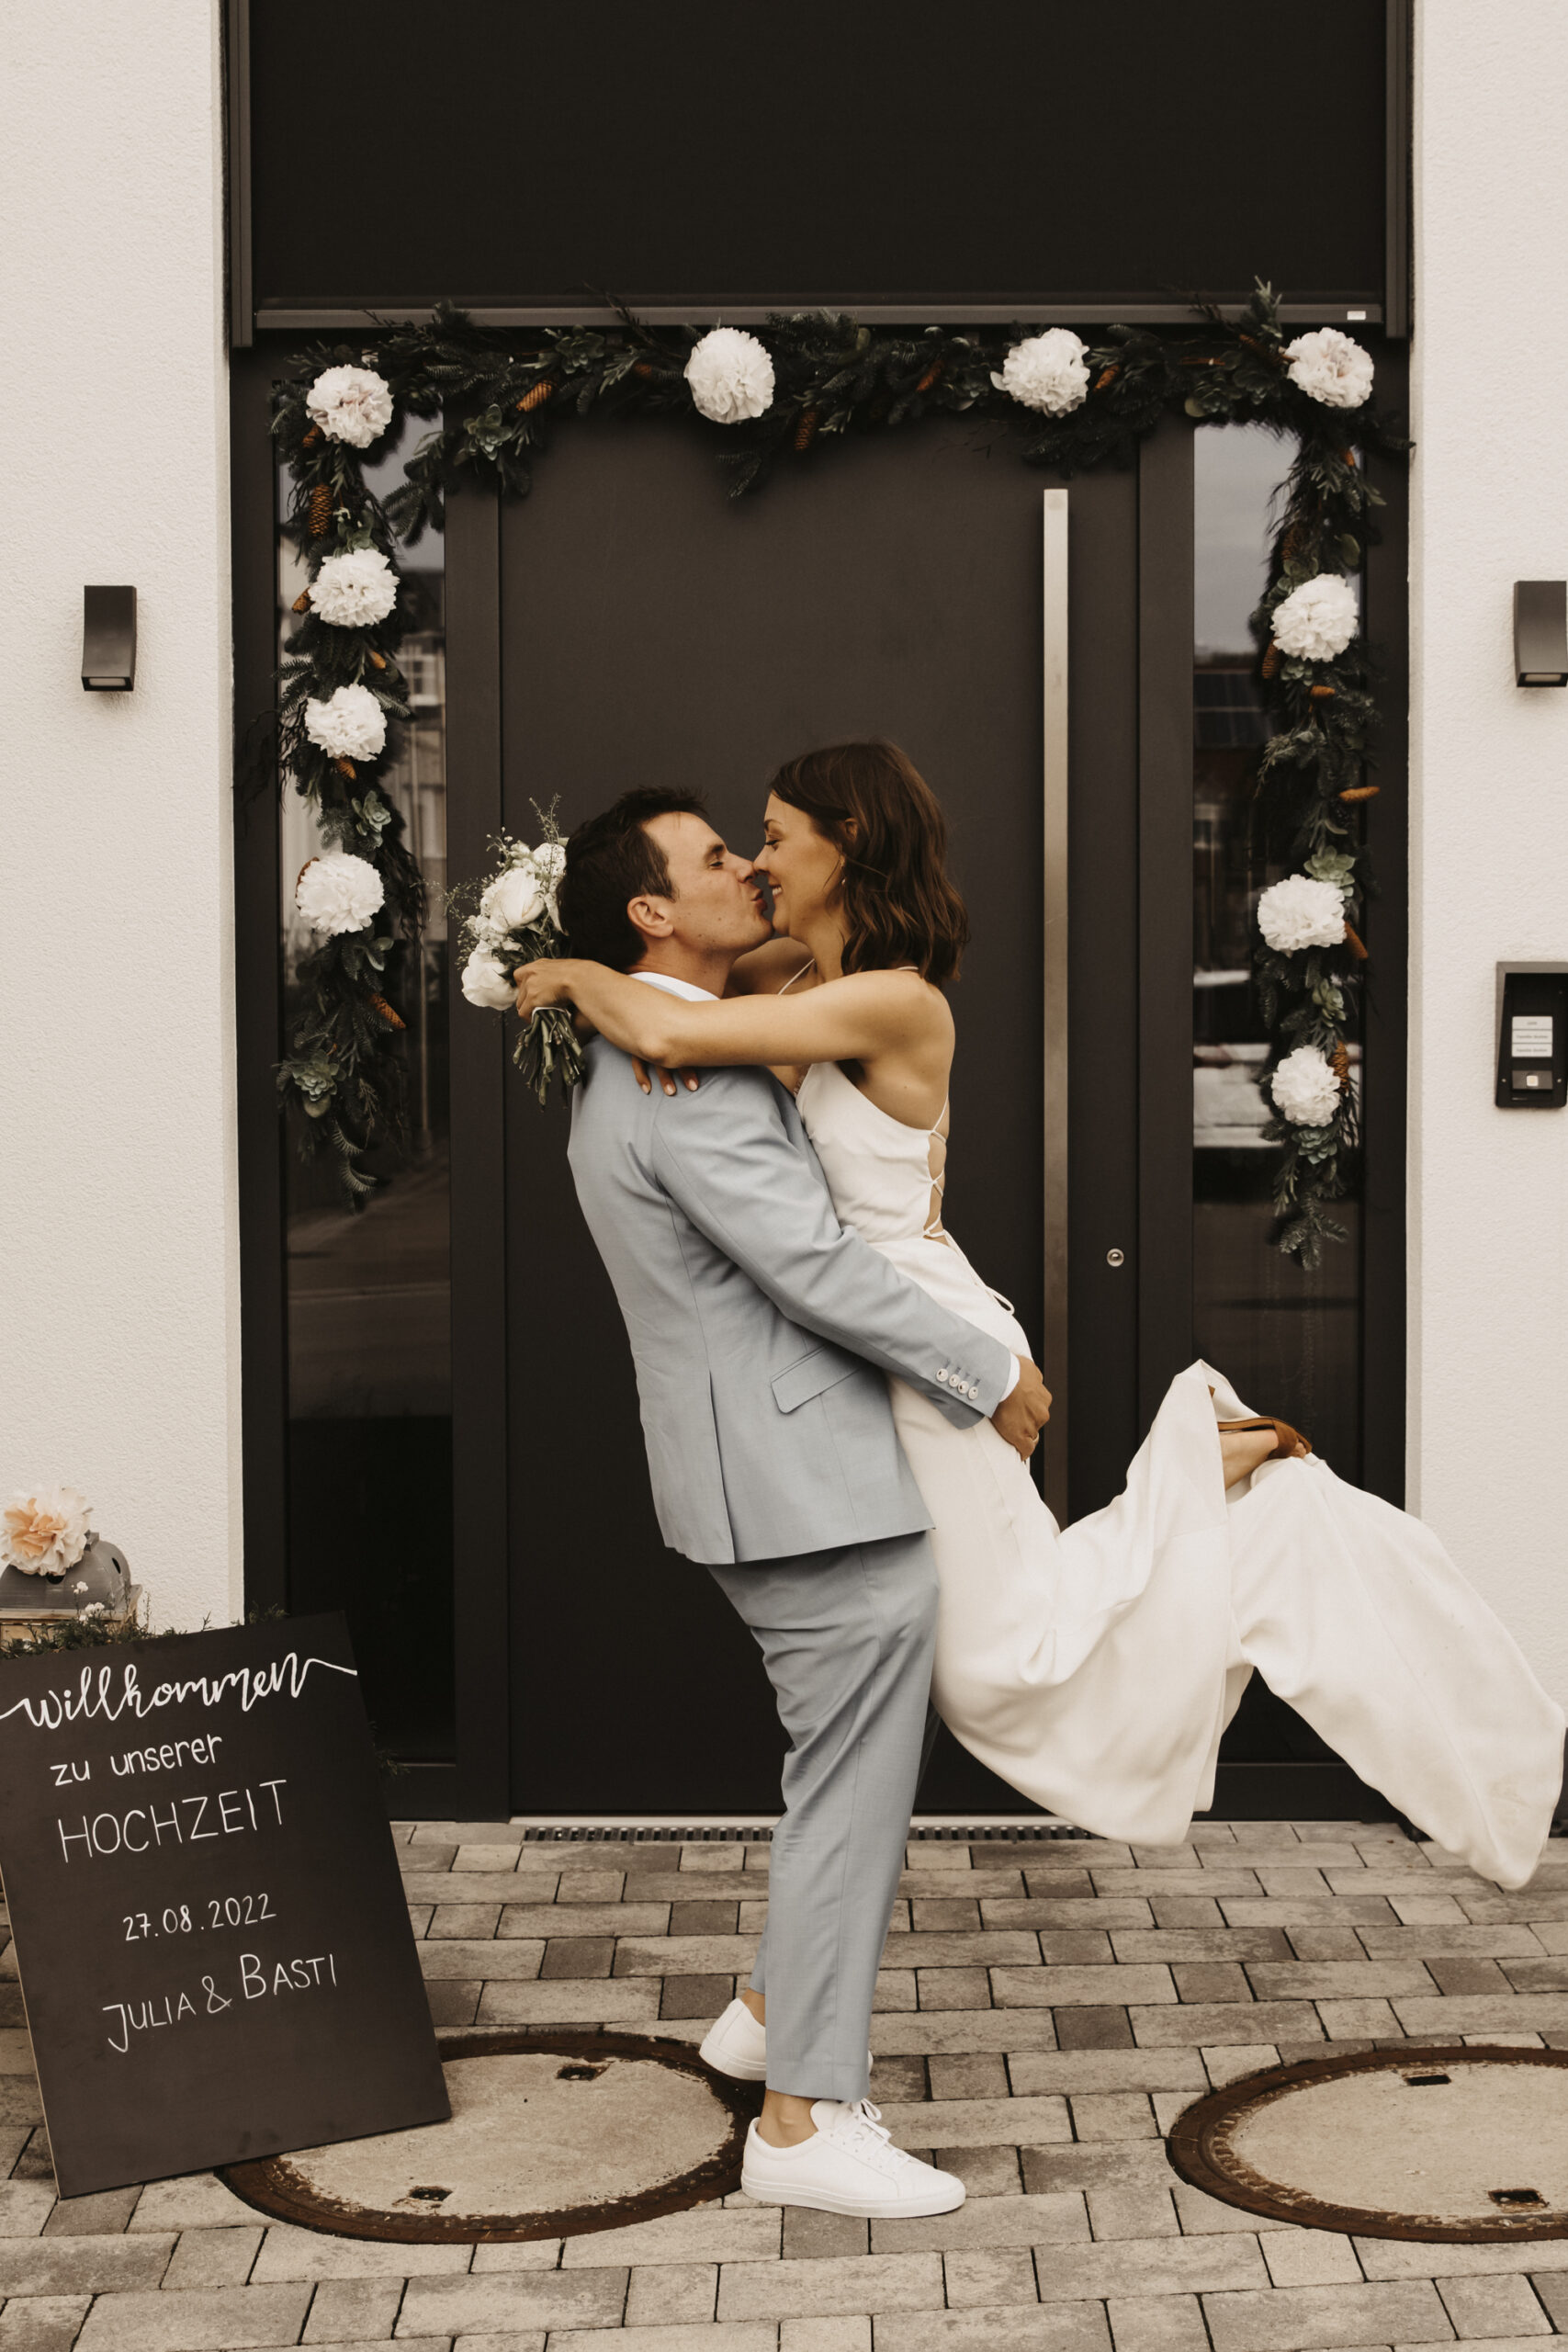 Bräutigam hebt seine Braut hoch und küsst sie dabei vor der dekorierten Hochzeitseingangstüre